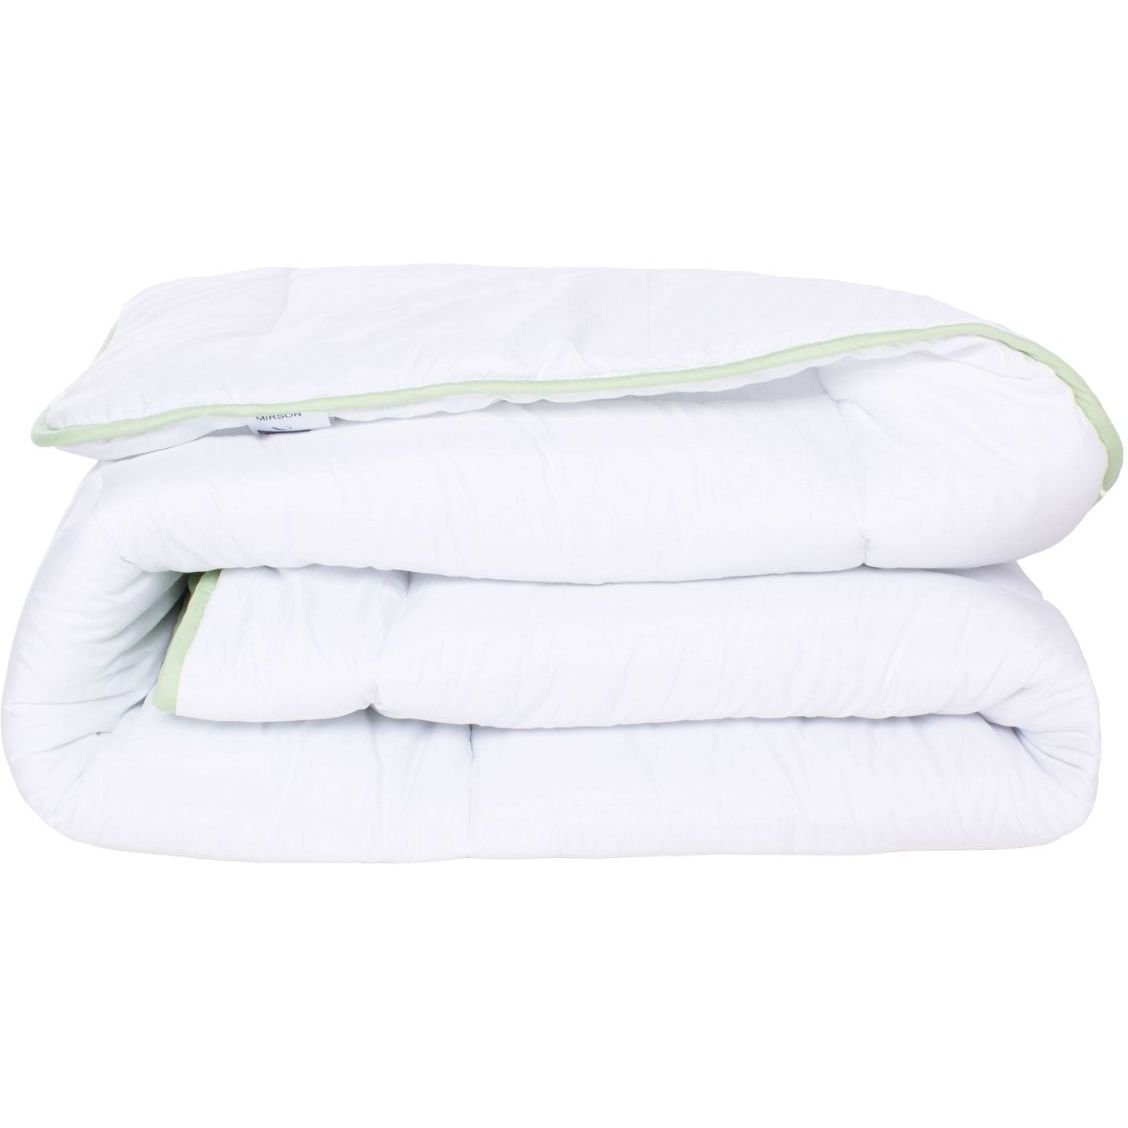 Одеяло антиаллергенное MirSon EcoSilk №003, зимнее, 172x205 см, белое (8062568) - фото 1